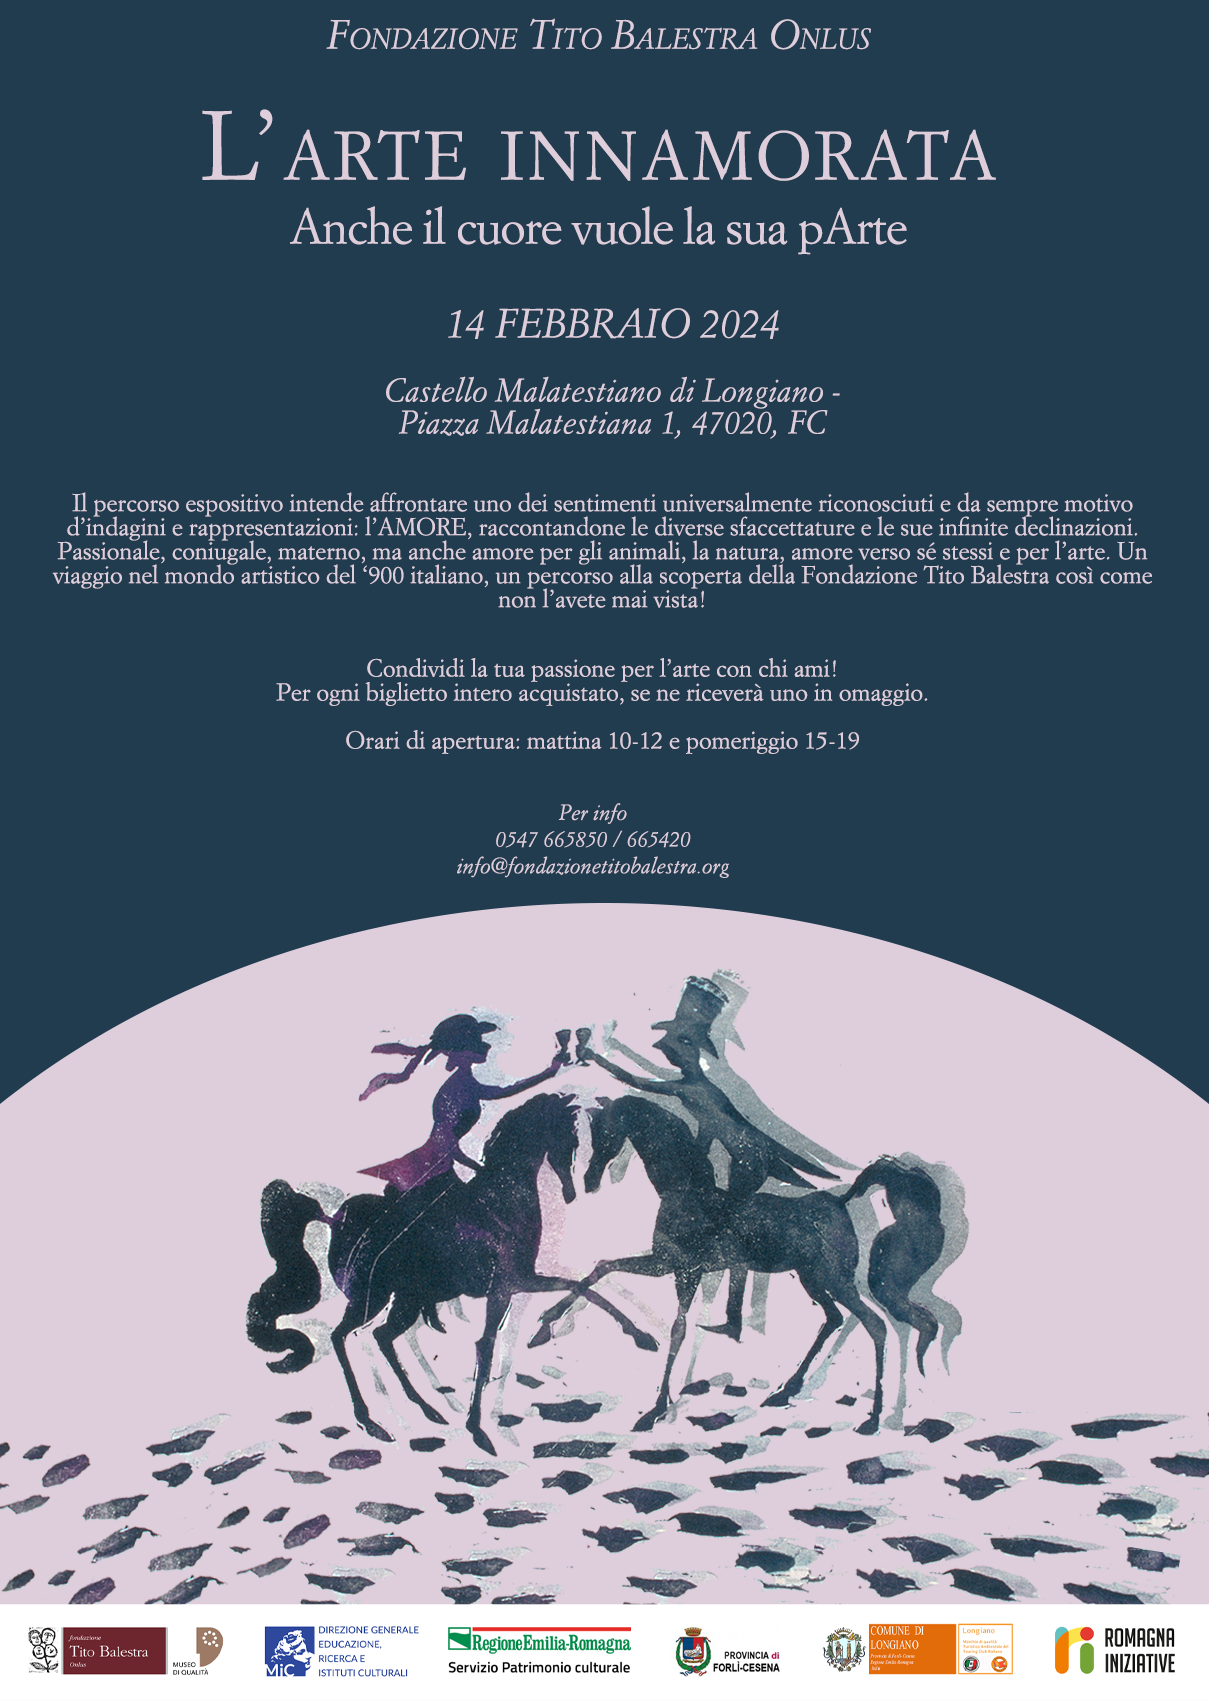  picture of the event: Anche il Cuore vuole la sua pArte - San Valentino alla Fondazione Tito Balestra Onlus